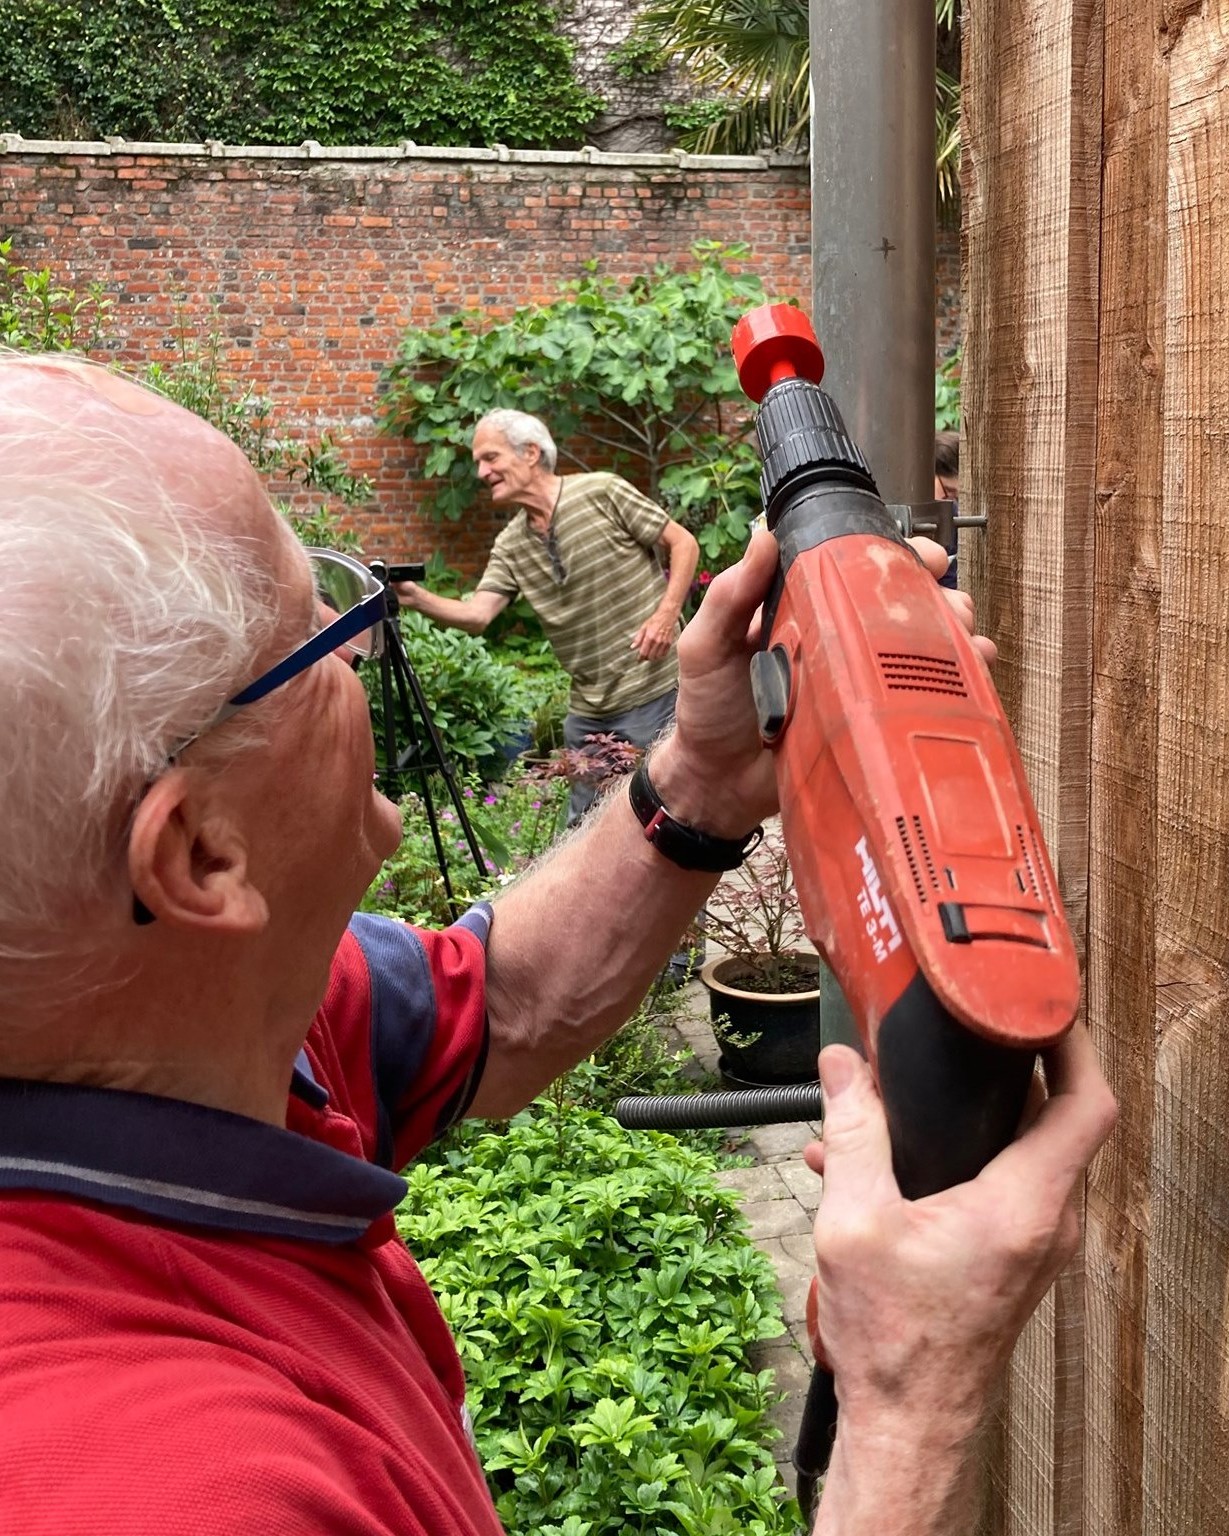 Klimplant vrijwilligers installeren regenwatertonnen in Antwerpen